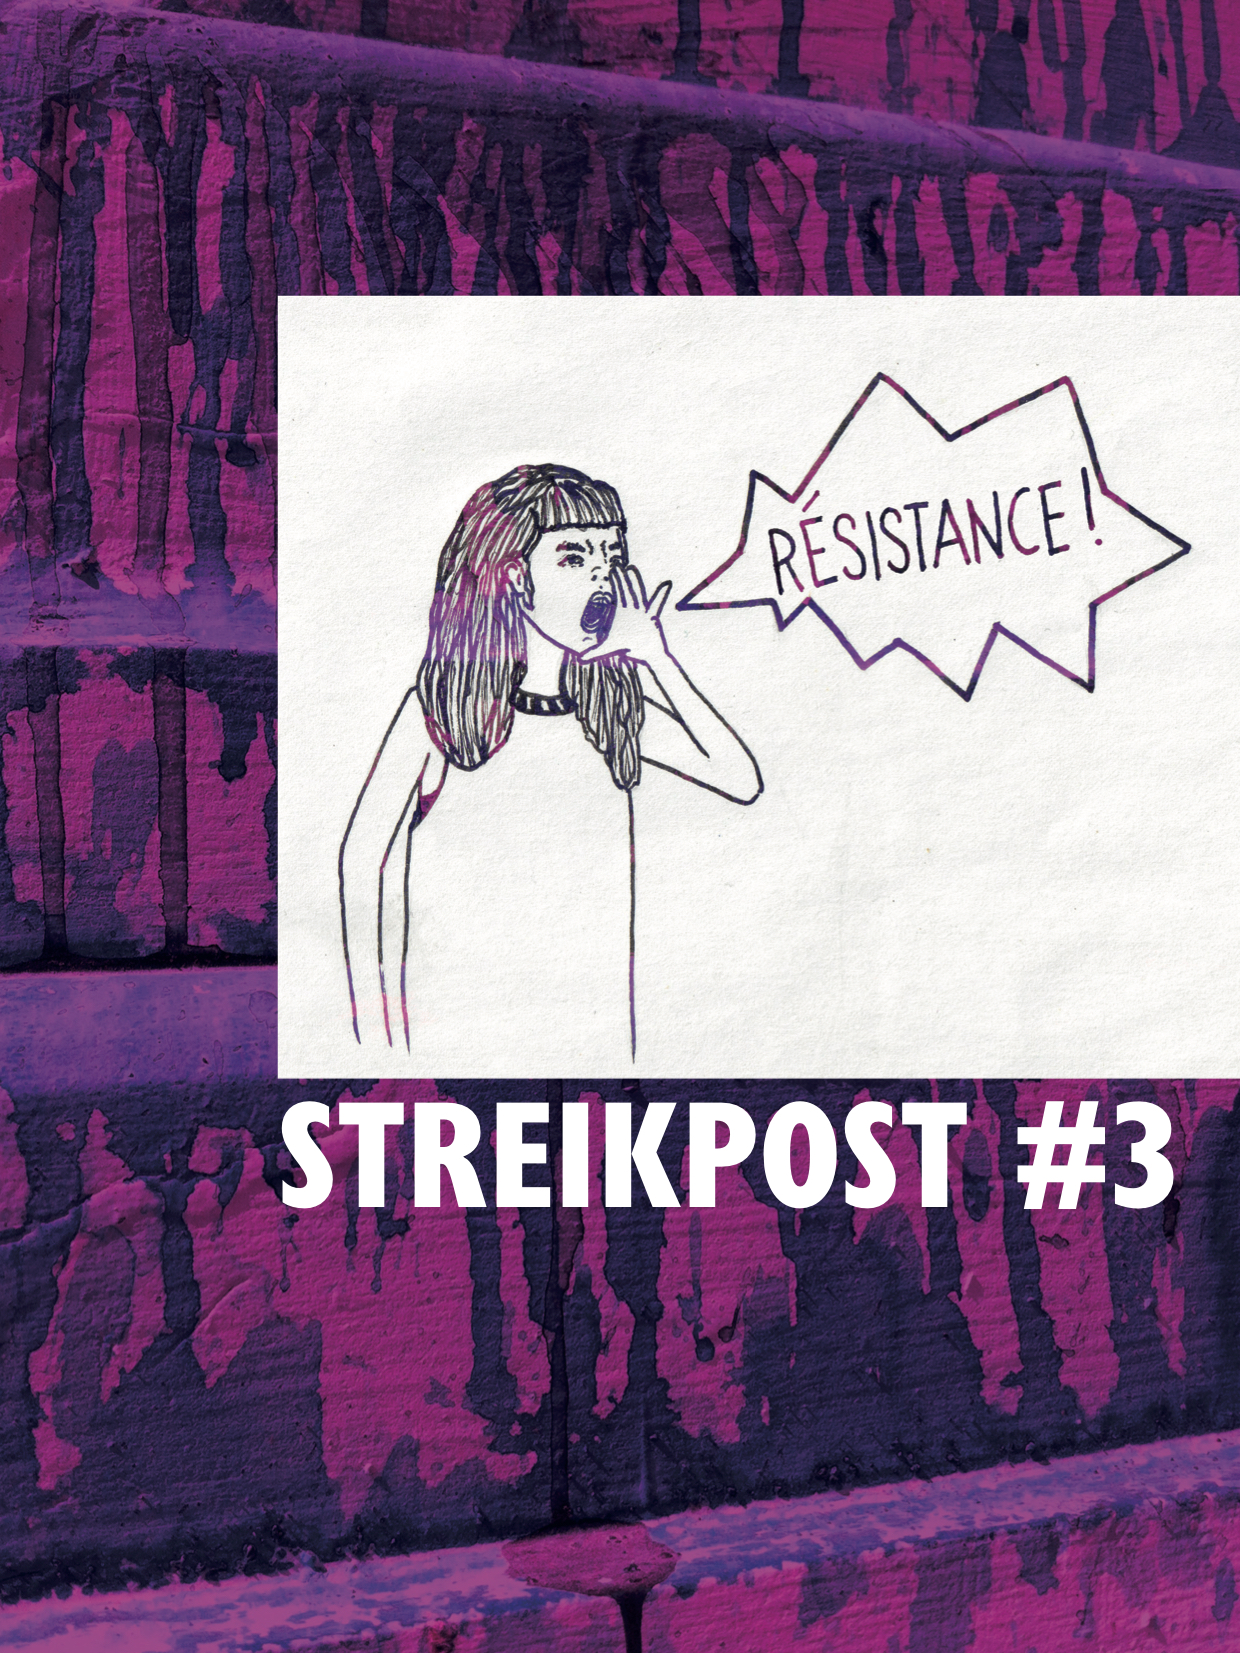 Titelbild Streikpost 3: gezeichnete Person mit Sprechblase "RÉSISTANCE!", lila Hintergrund